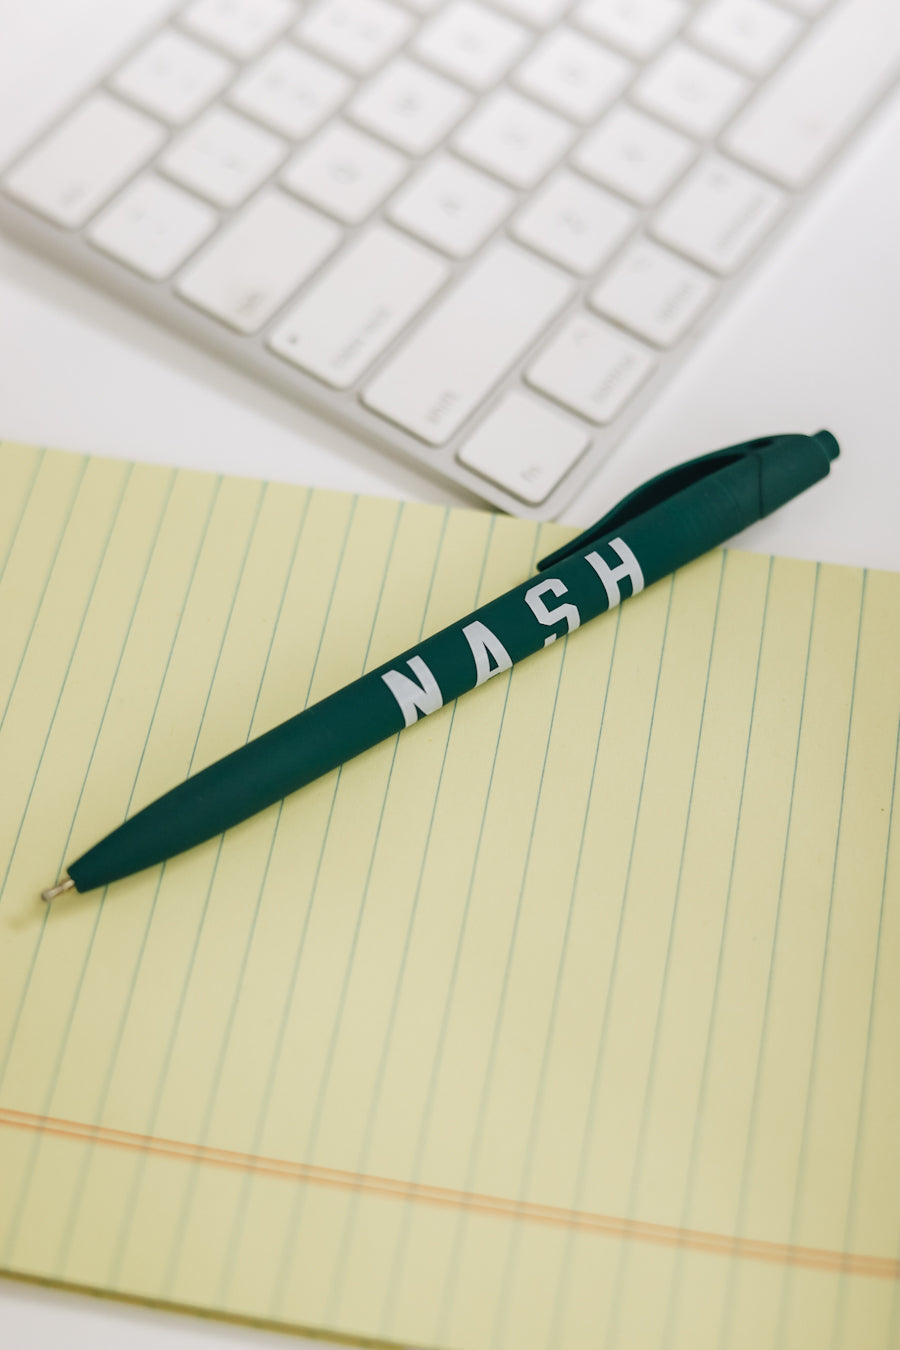 NASH Pen [Green]